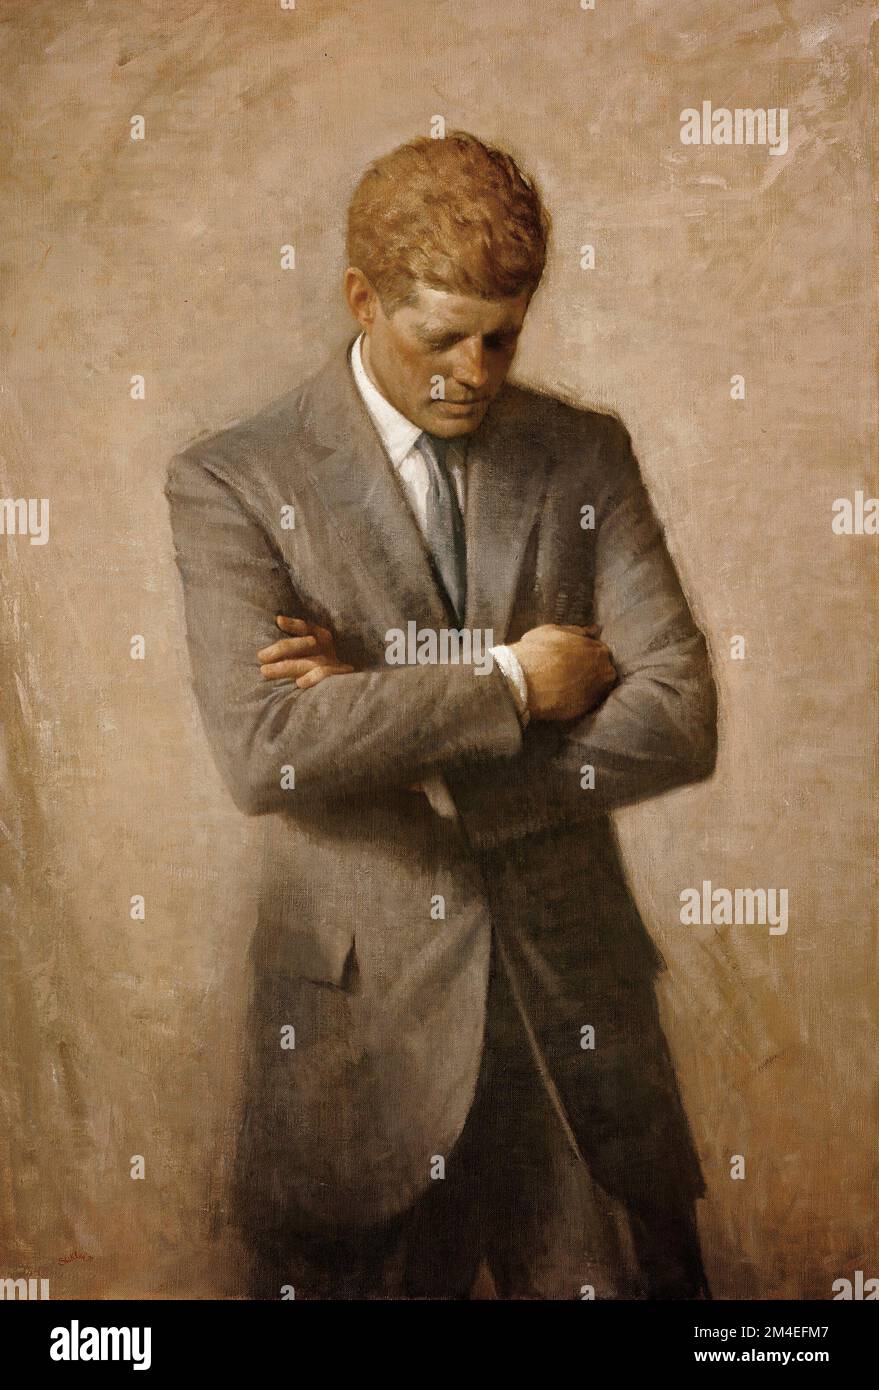 Offizielles Weißes Haus-Porträt von John F. Kennedy, von Aaron Shikler Stockfoto